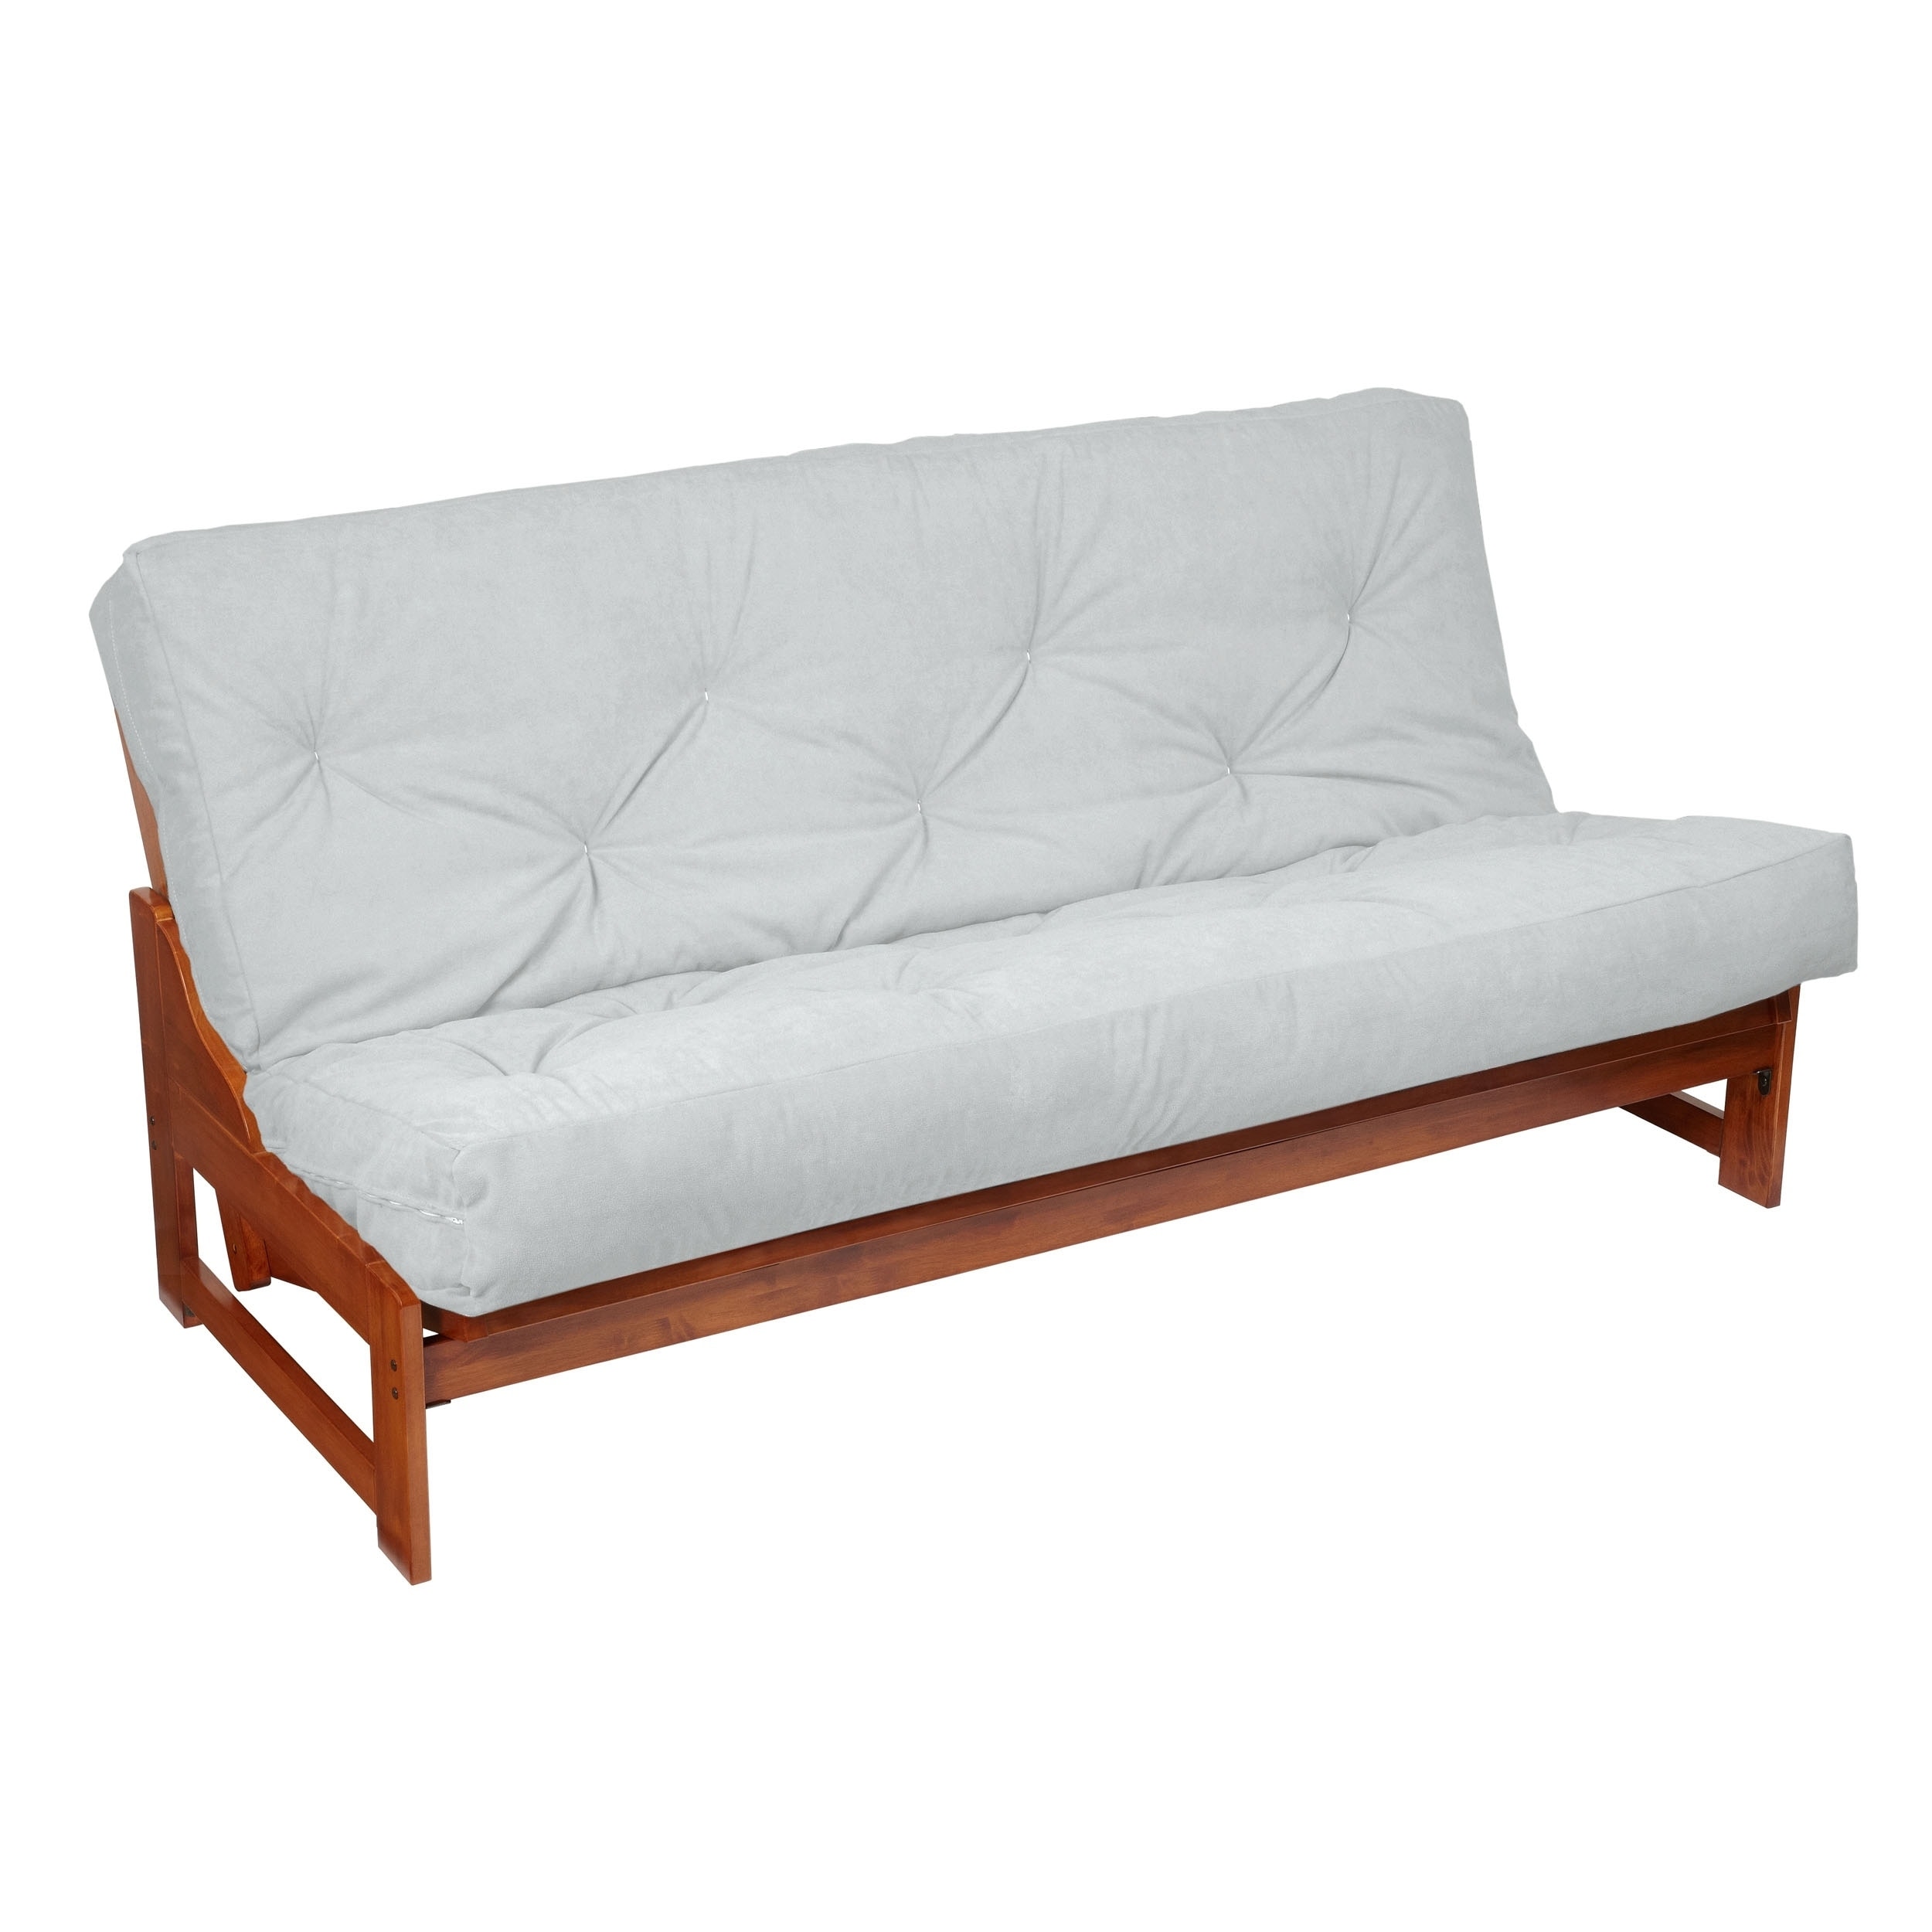 queen size futon set